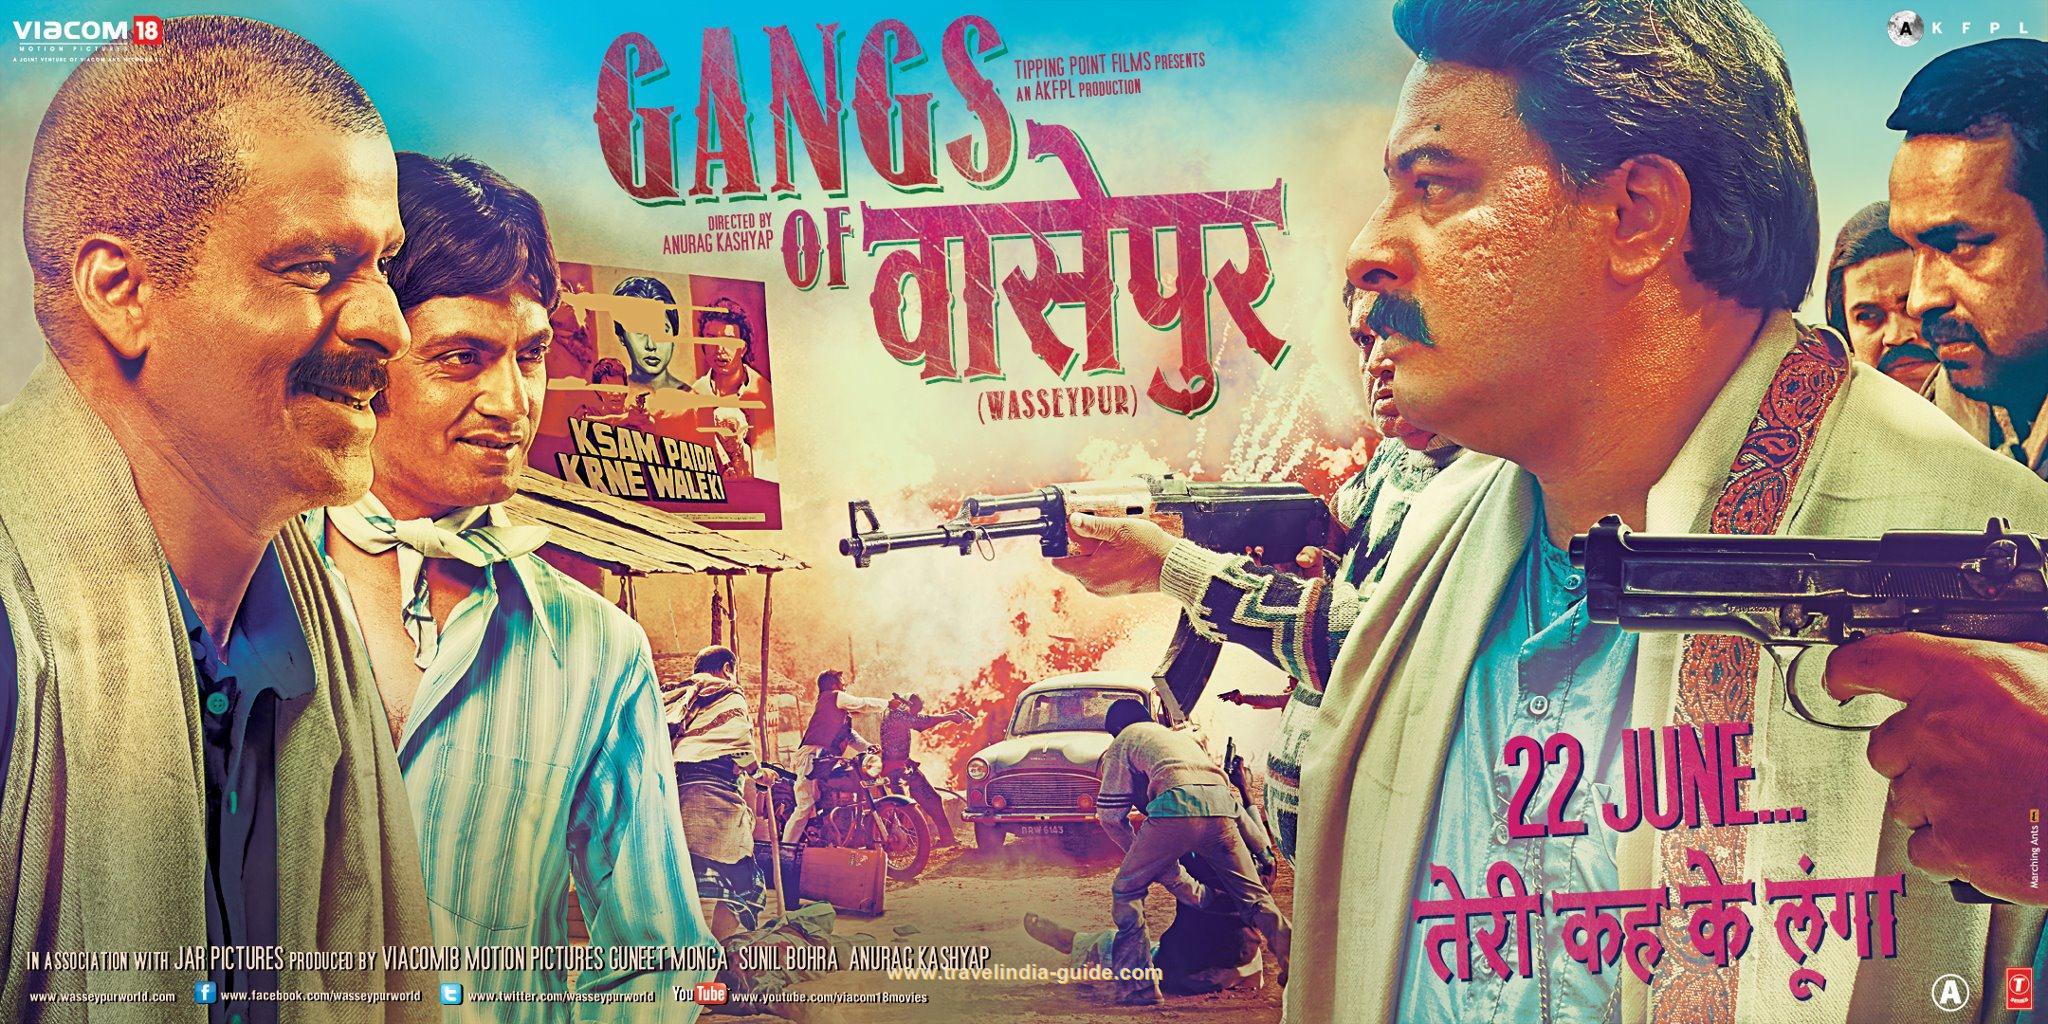 गैंग्स ऑफ वासेपुर - अनुराग कश्यप के निर्देशन में बनी ये एक्शन -क्राइम फिल्म 1940-1990 के मध्य बिहार के कोयला माफिया और वहां के राजनेताओं के बीच के चलते आए खूनी संघर्ष को दर्शाती है। सत्य घटनाओं से प्रेरित यह फिल्म भारतीय सिनेमा में एक नया अध्याय जोड़ती है। 